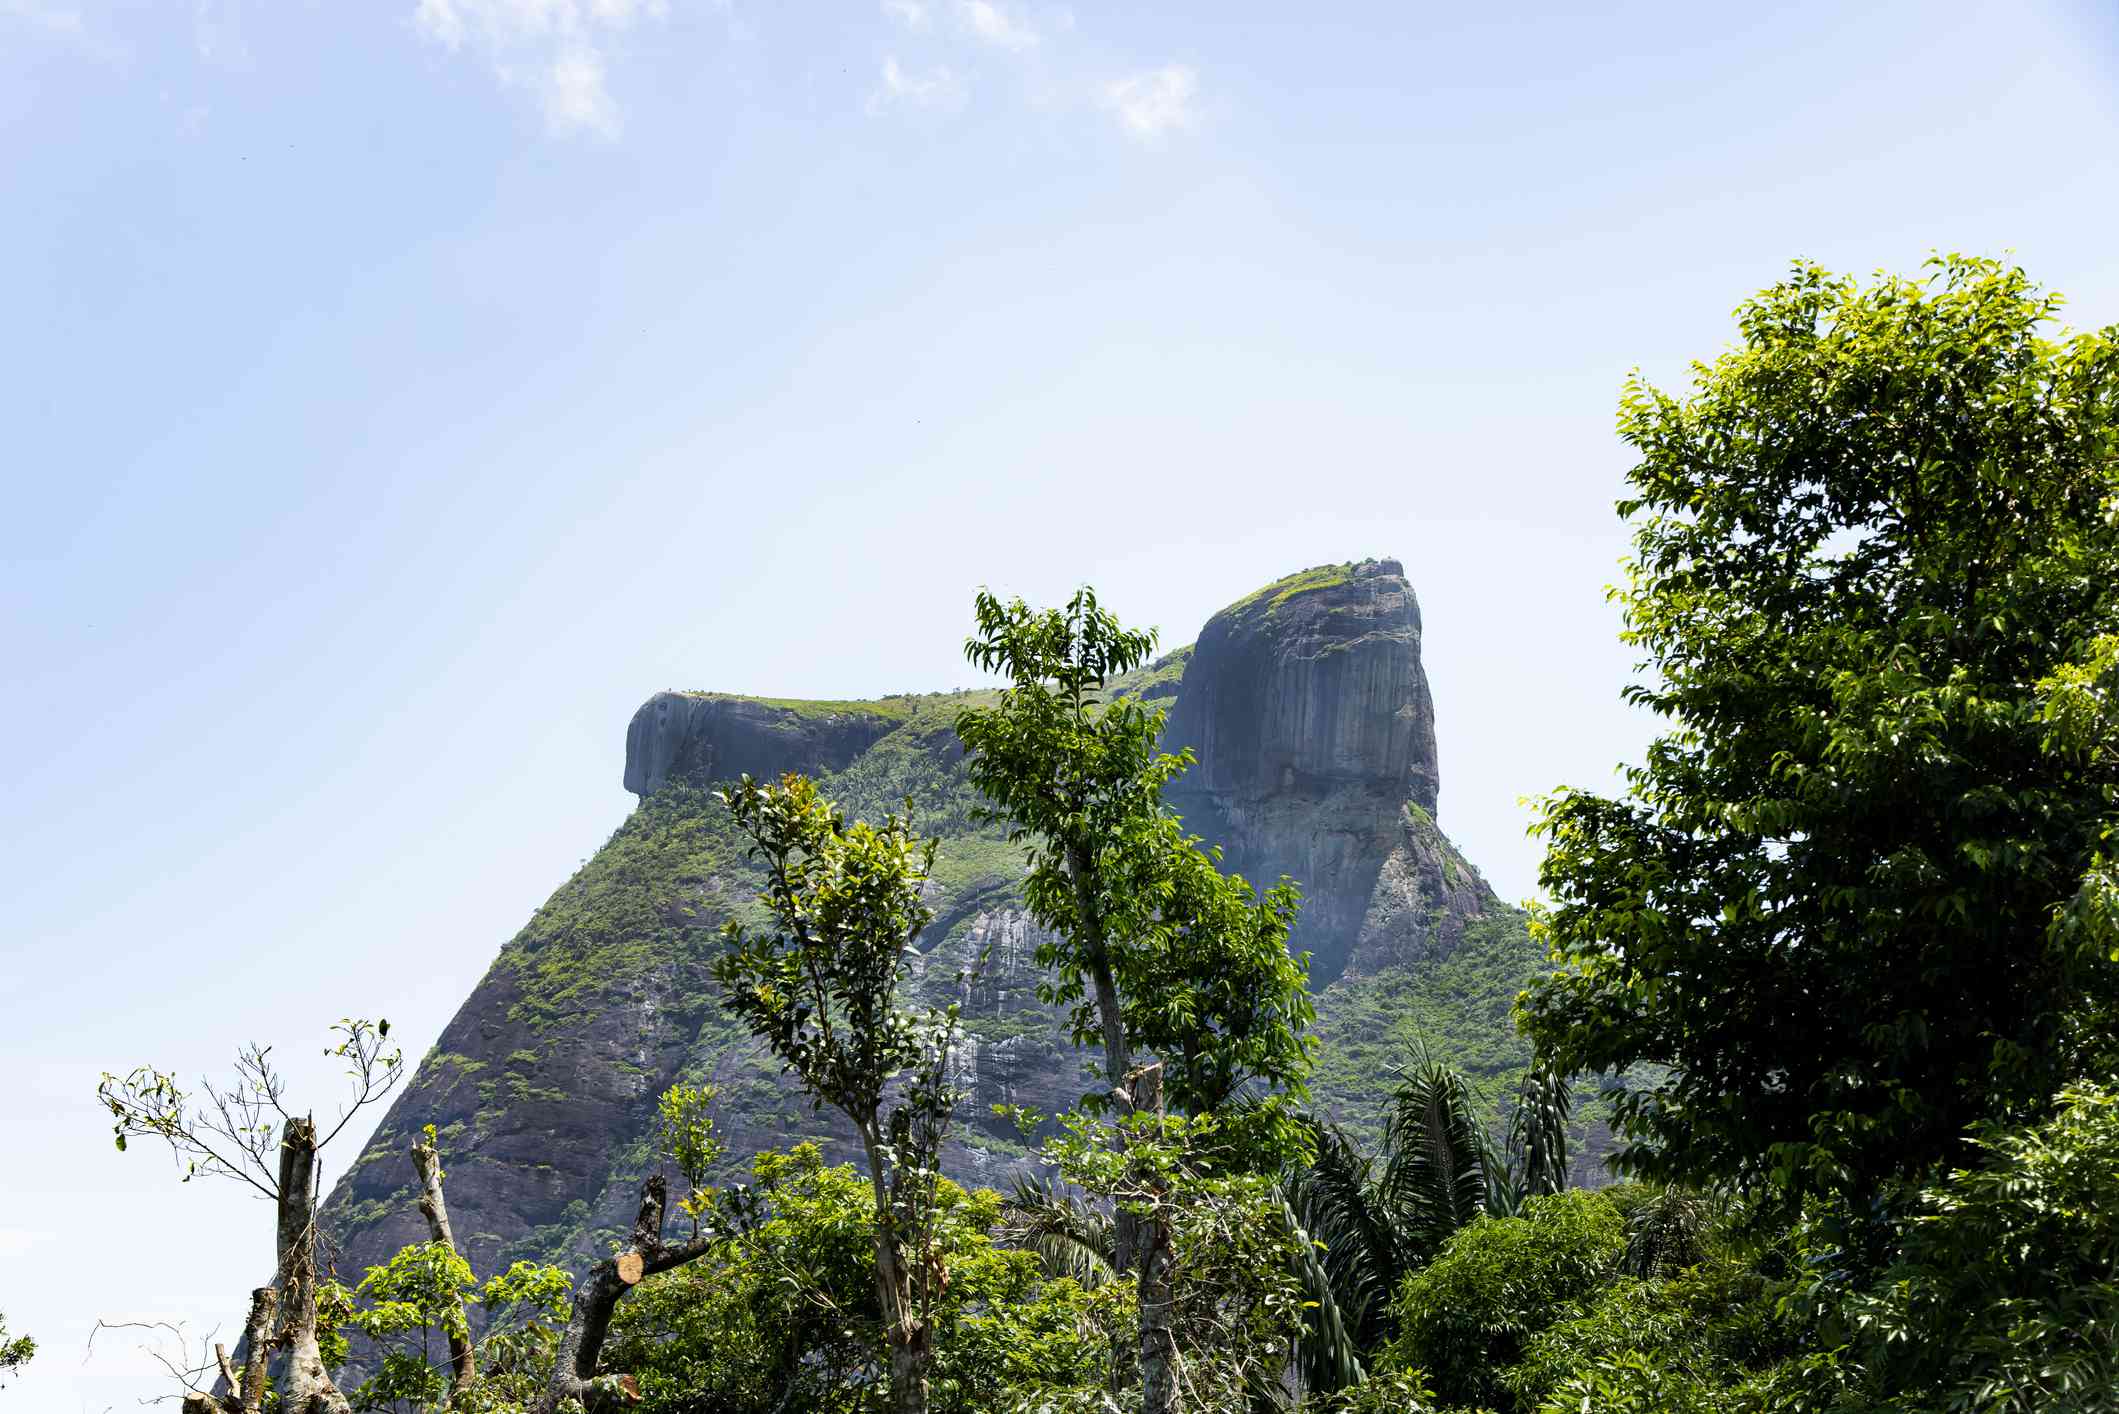 Pedra da Gávea，这是一座石山，山顶上似乎有一张人脸，前景中有高大的绿树，背景中有蓝天